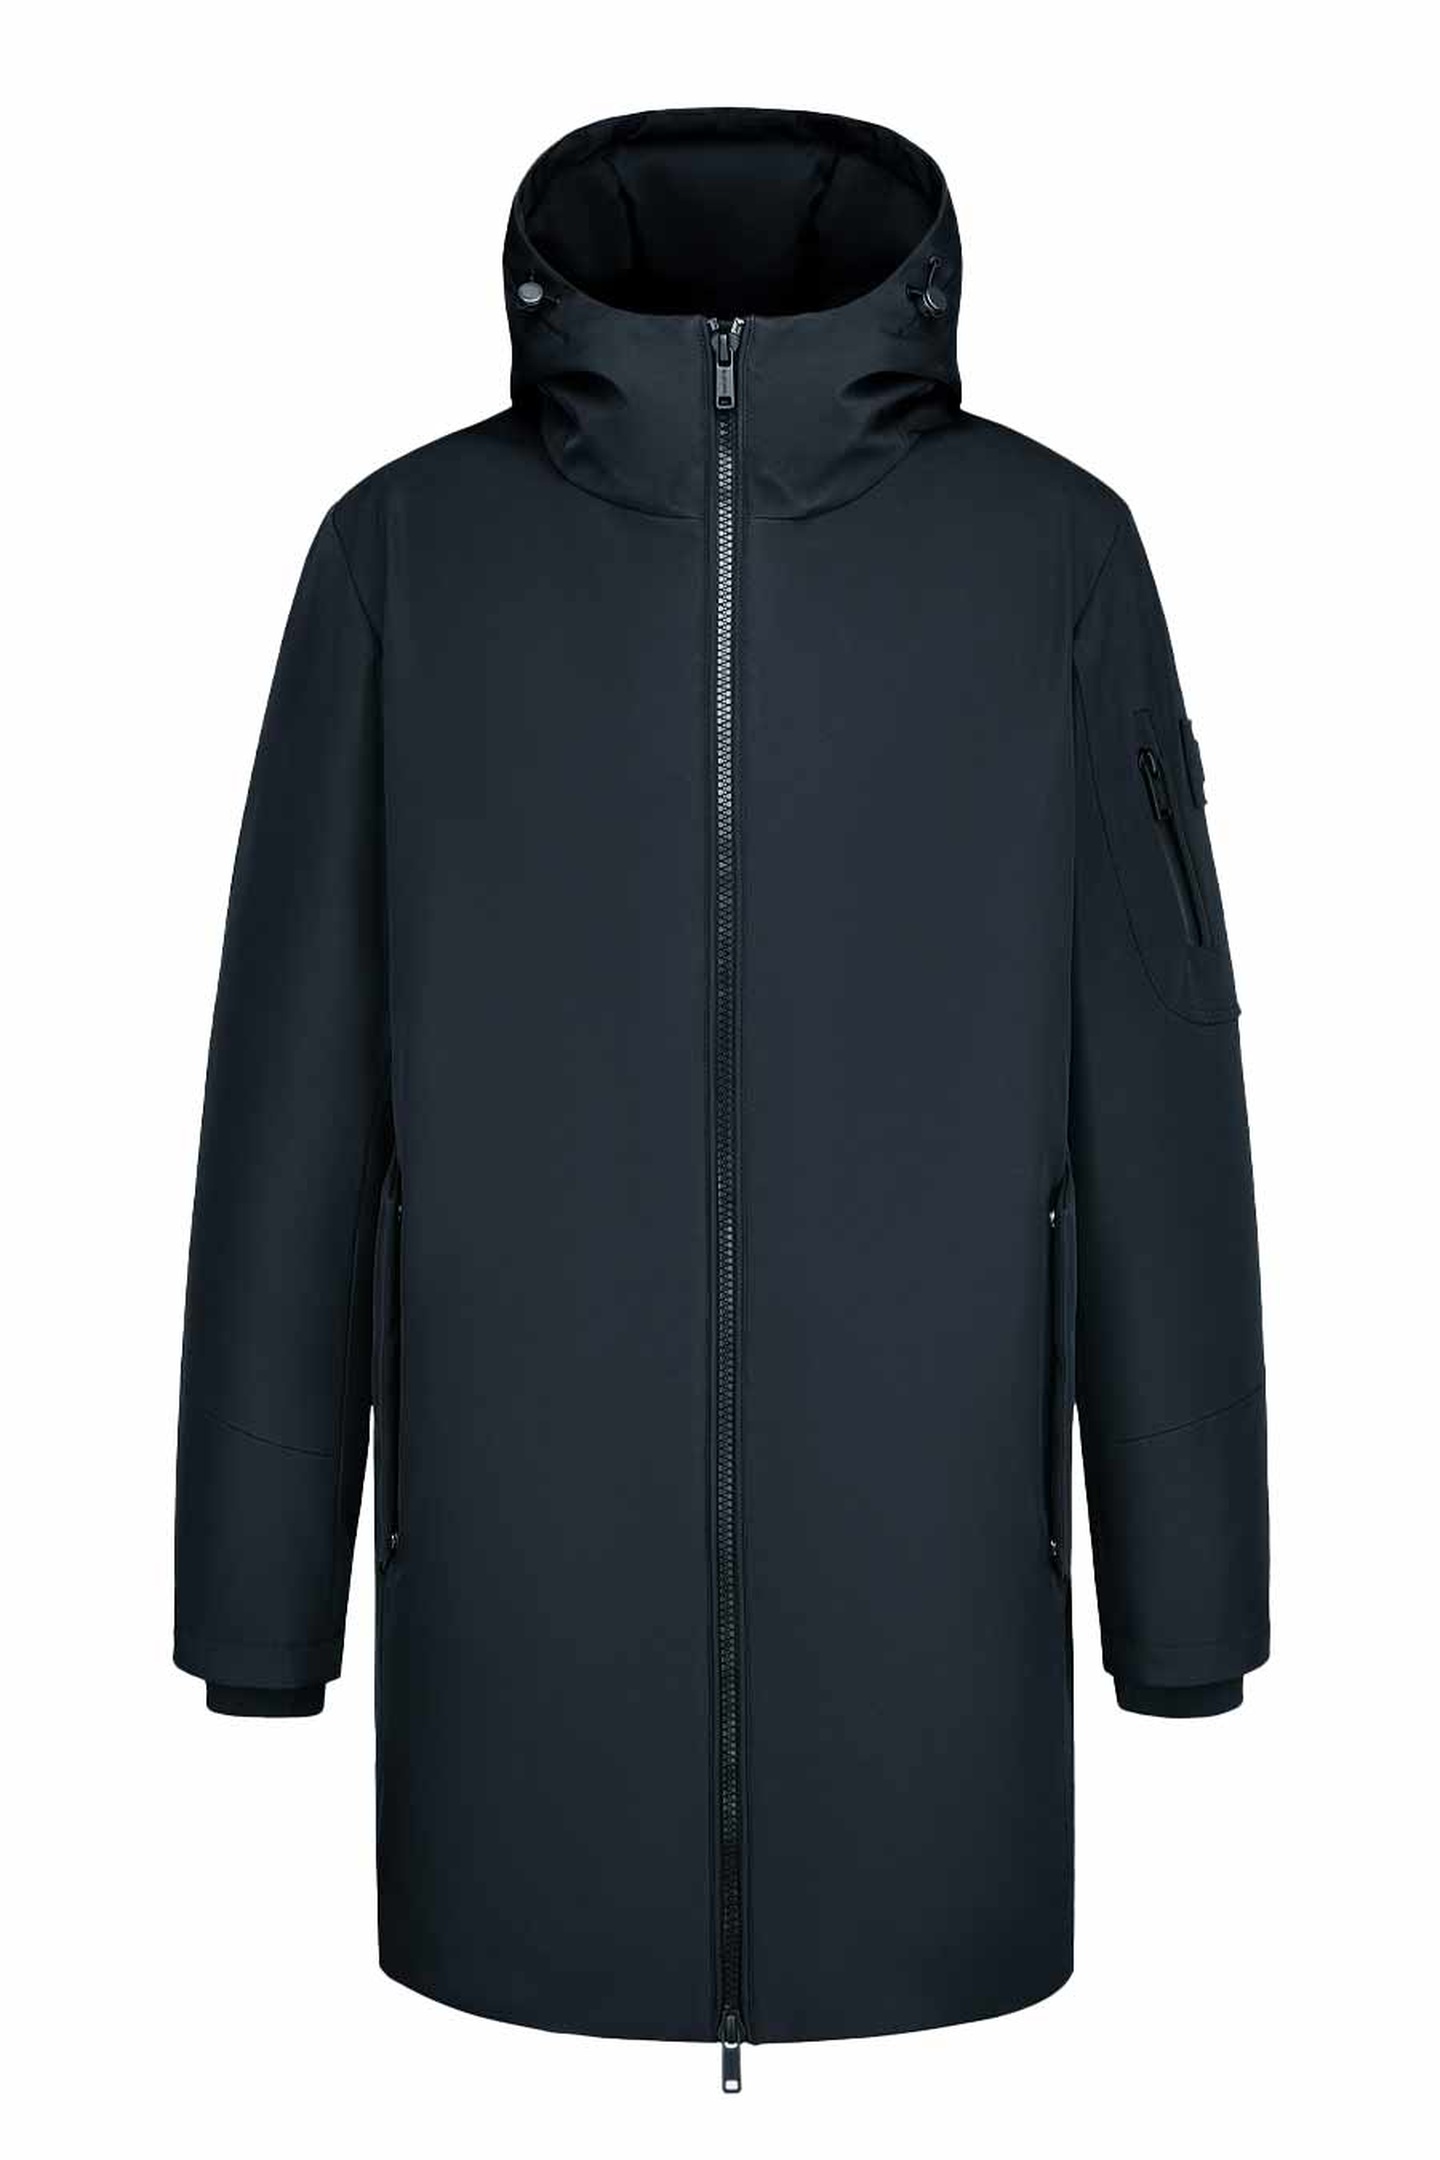 Куртка Albione 275Jm, цвет черный, размер 46